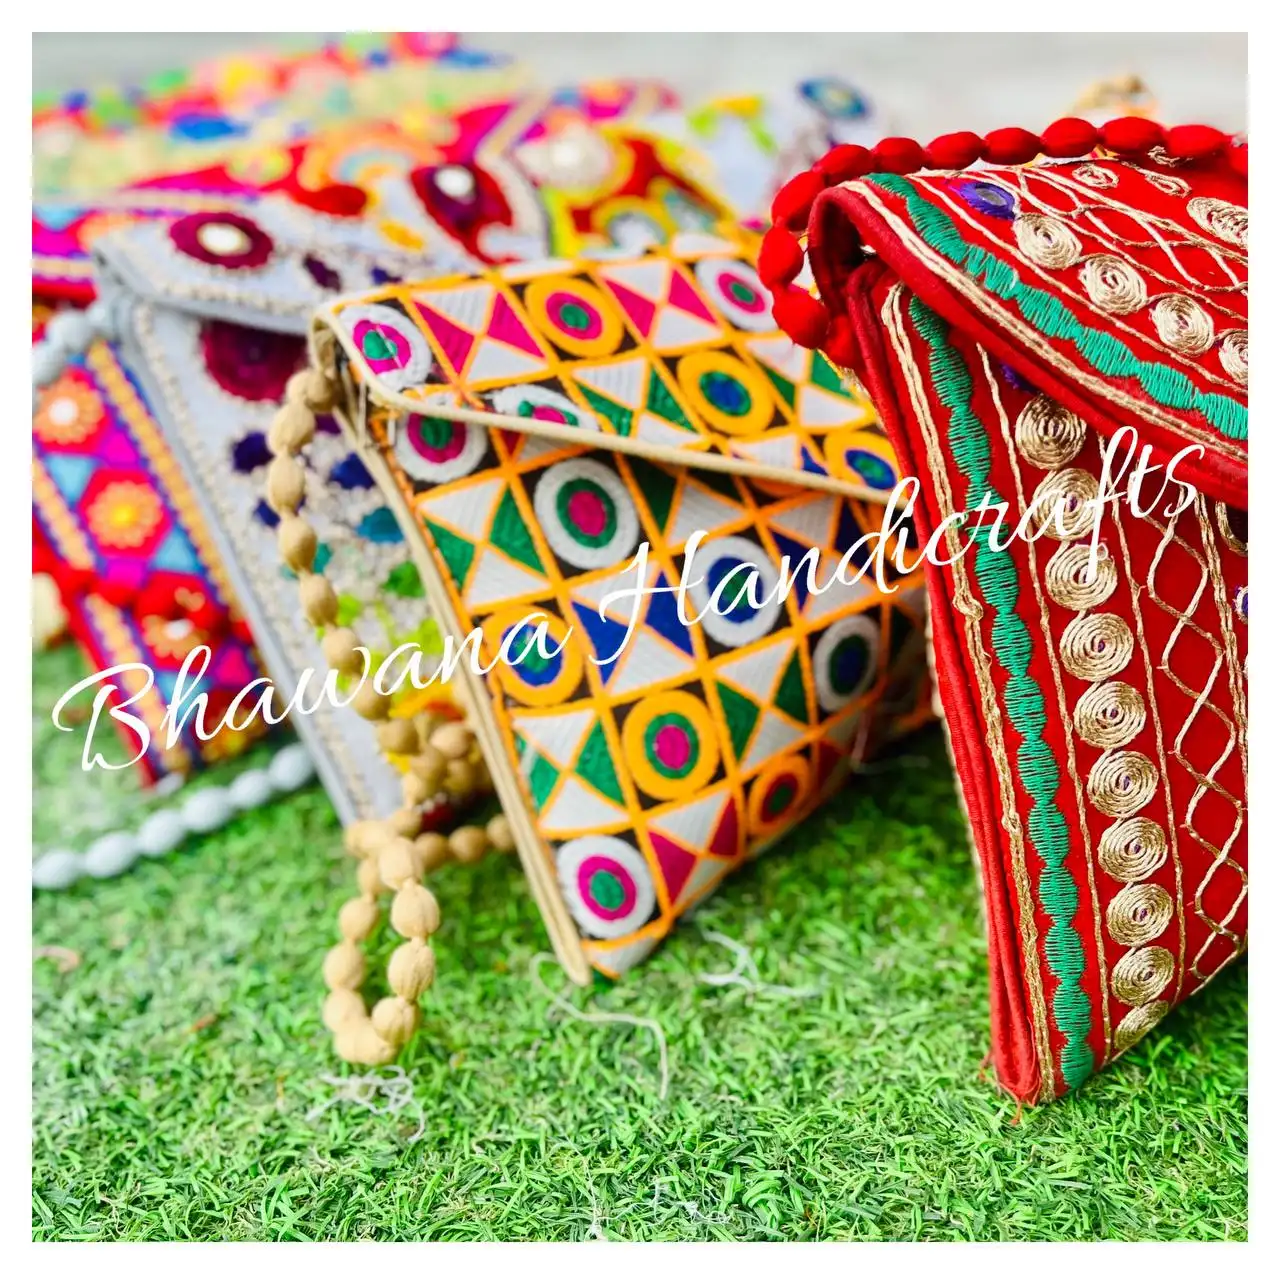 Сумка-клатч Banjara, сумка для смены хиппи, сумка в стиле бохо, индийская сумка, клатч для племенных сумок, Этническая сумка, льняные соединения ручной работы